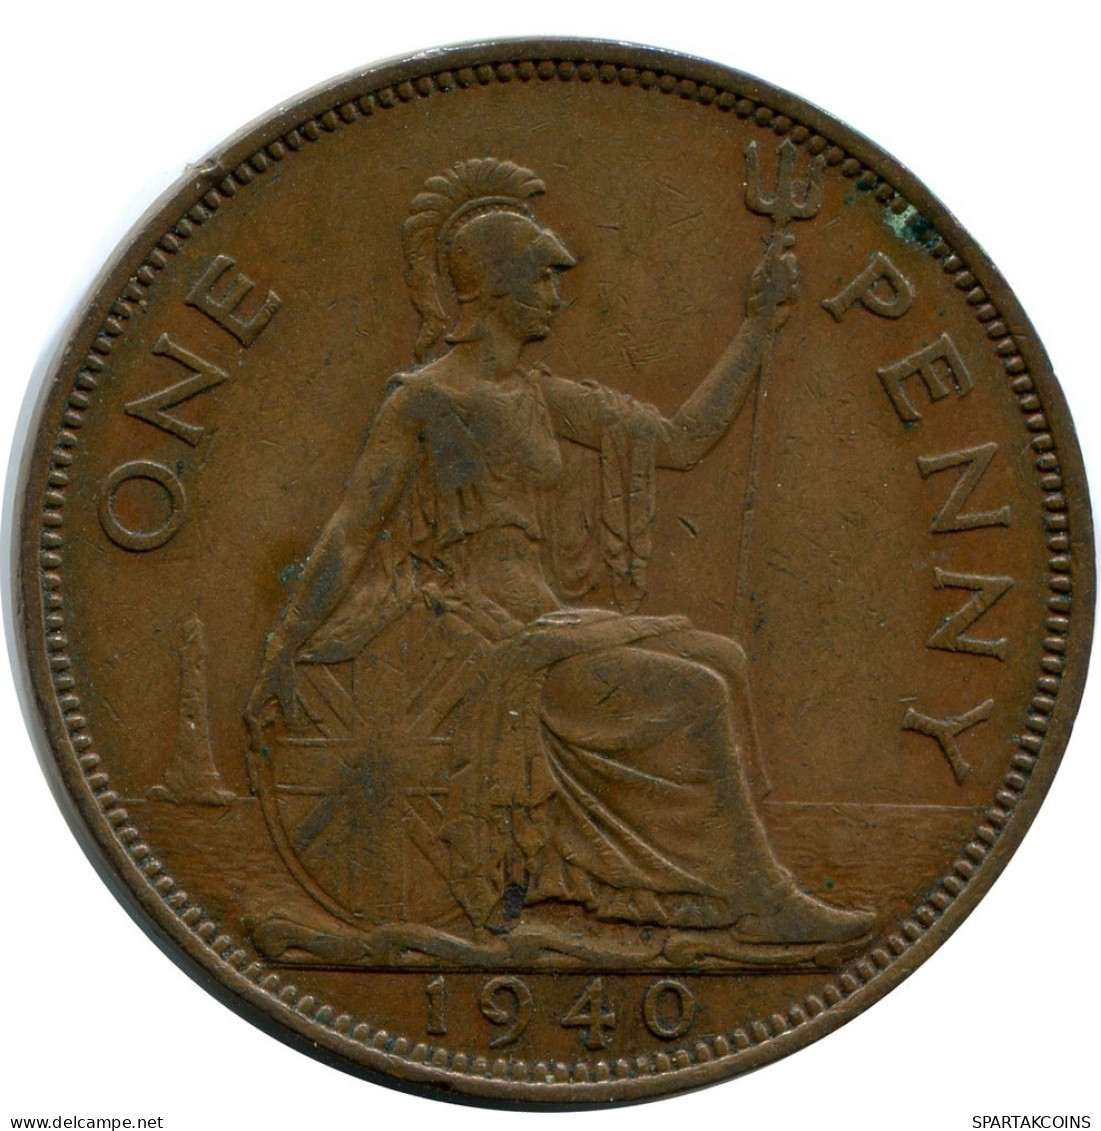 PENNY 1940 UK GROßBRITANNIEN GREAT BRITAIN Münze #BB024.D.A - D. 1 Penny